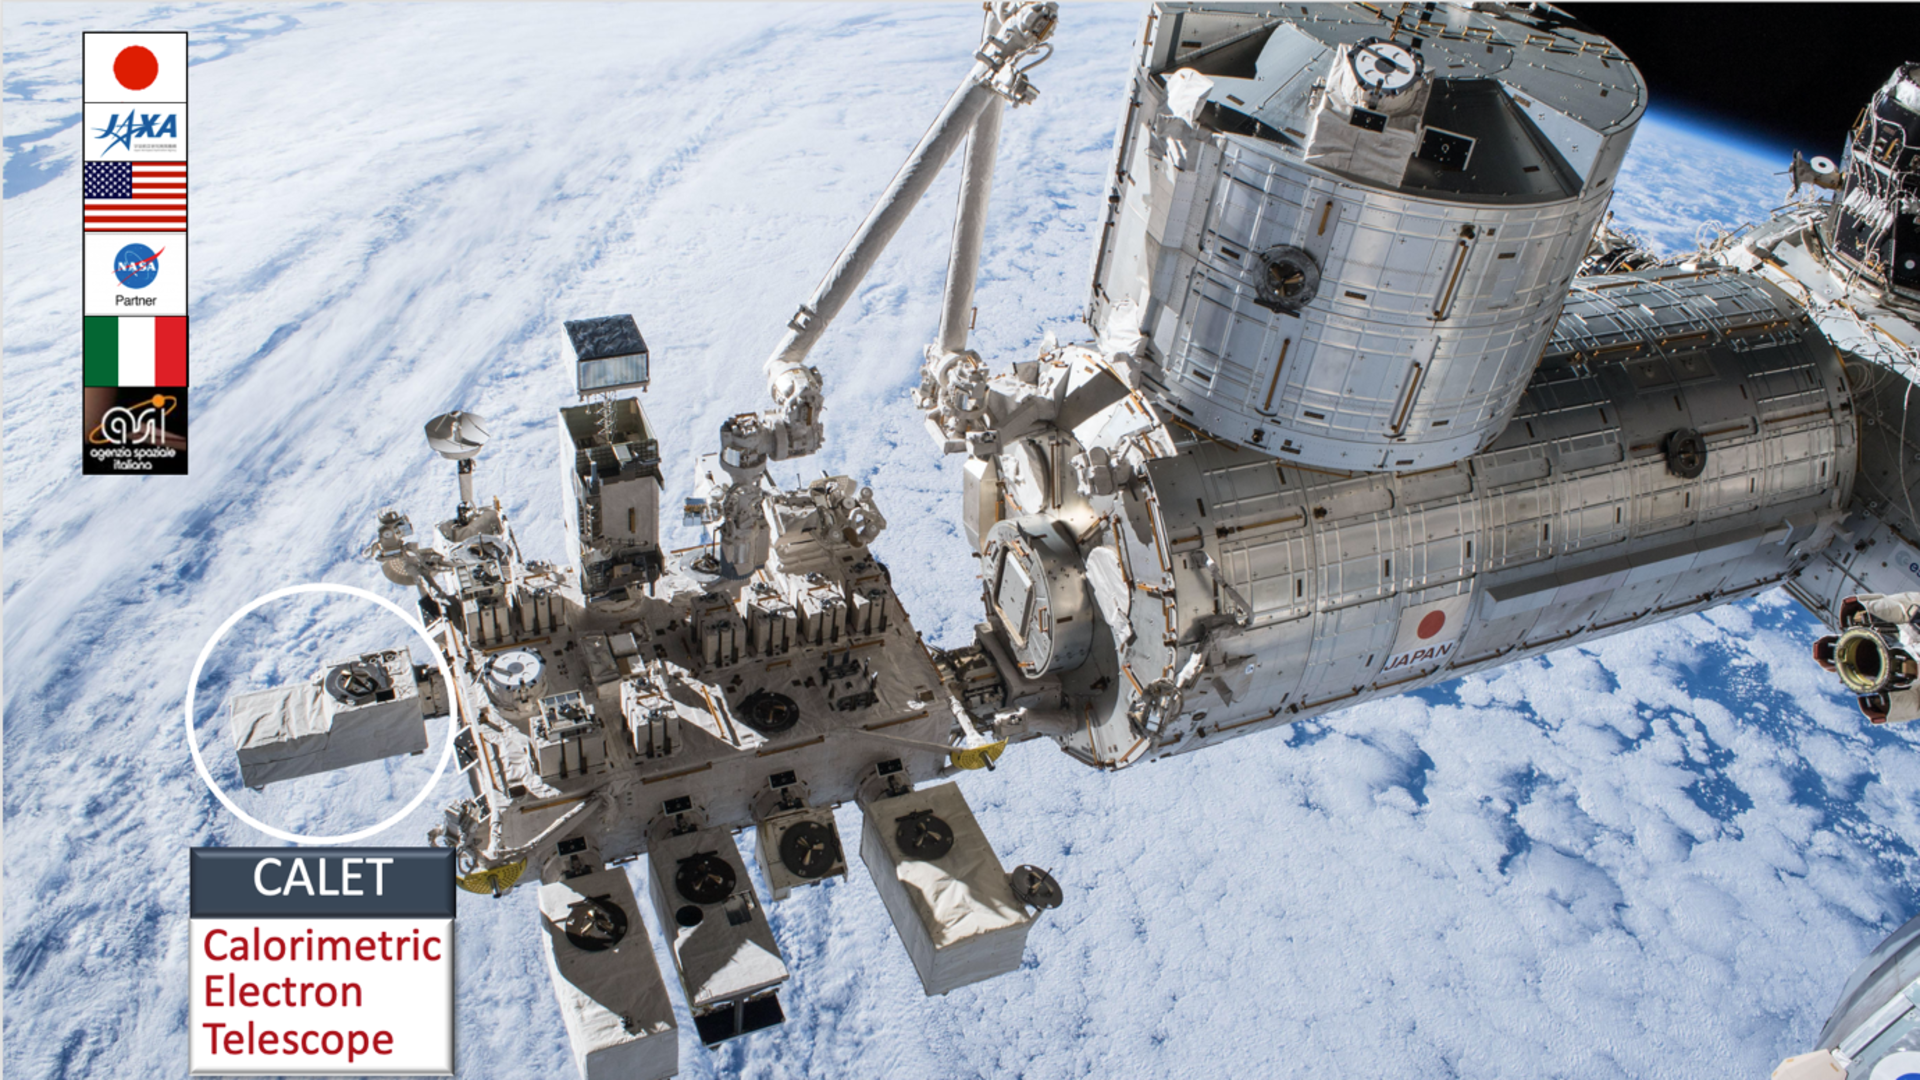 CALET sulla ISS misura lo spettro del nickel con una precisione senza precedenti